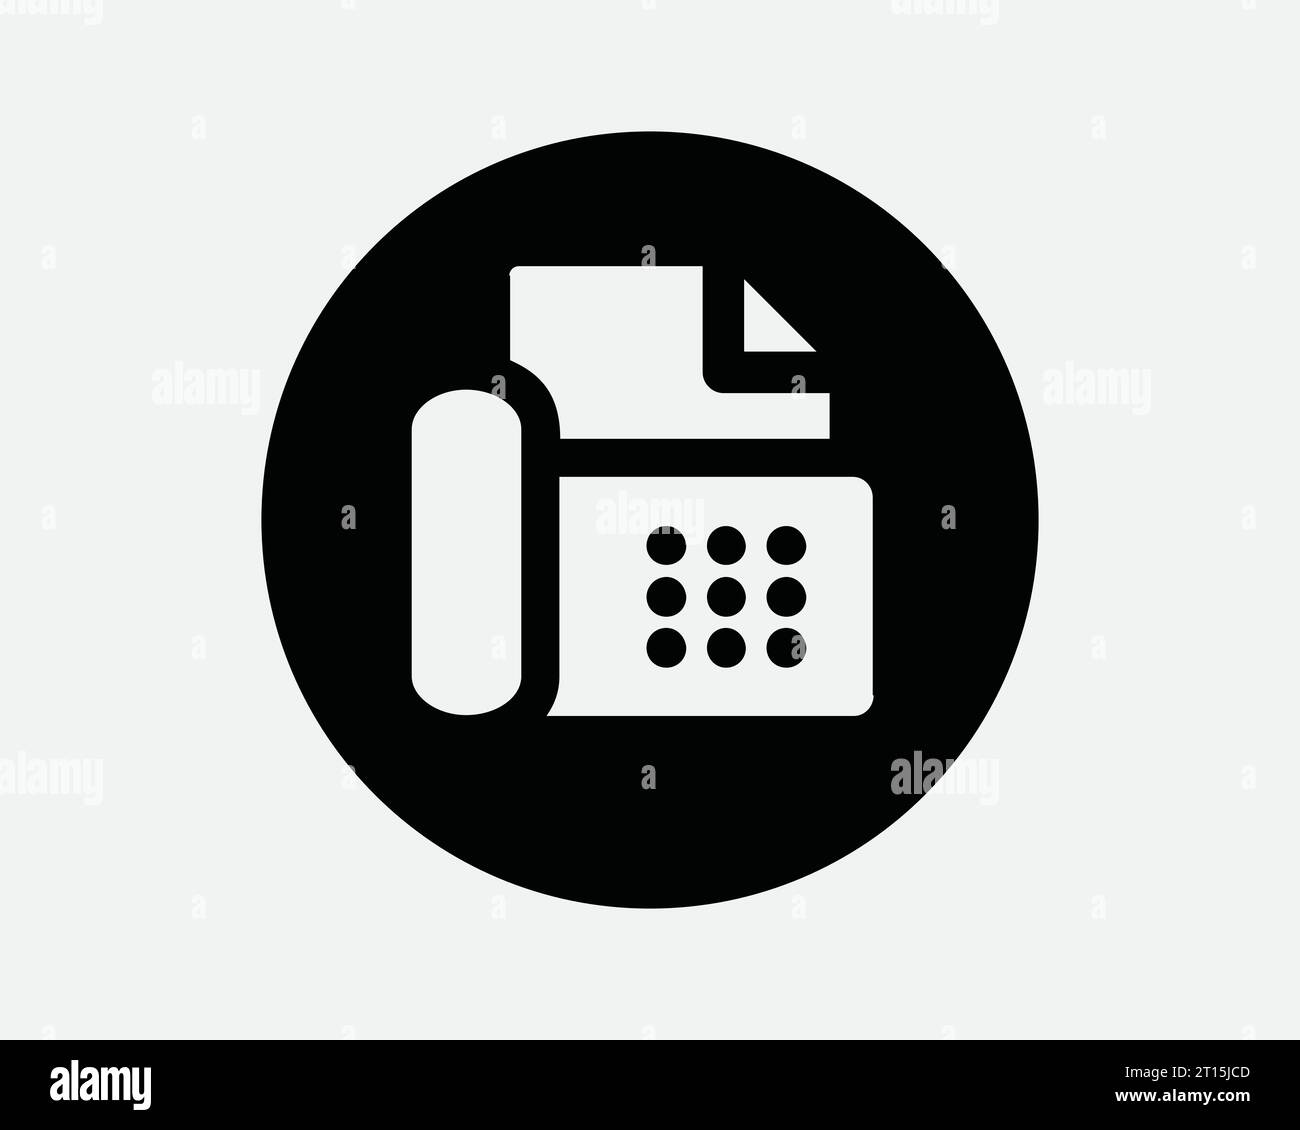 Télécopieur cercle icône équipement de bureau imprimante périphérique téléphone téléphone d'affaires rond ligne noire blanche contour forme signe symbole EPS vecteur Illustration de Vecteur